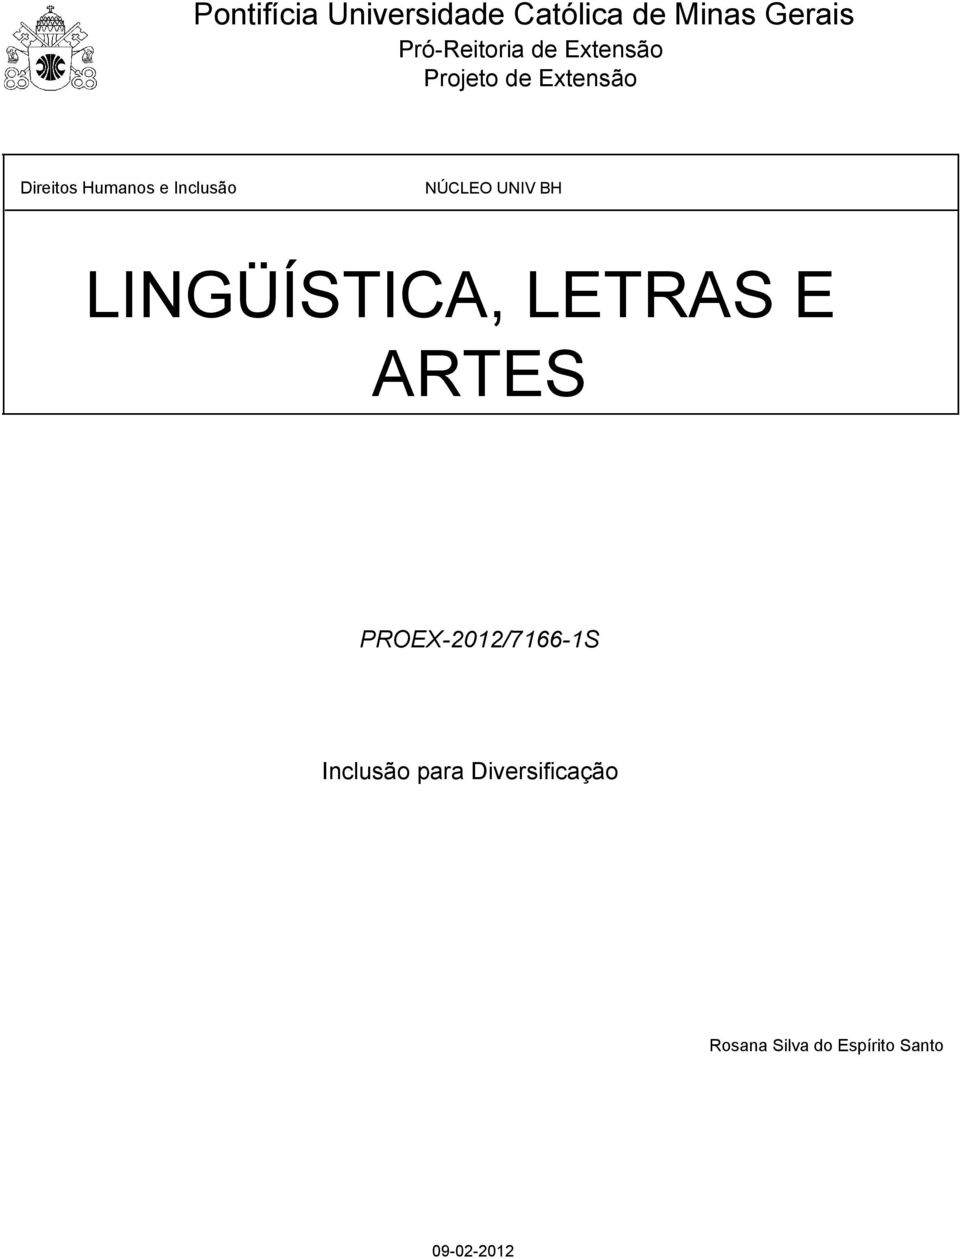 NÚCLEO UNIV BH LINGÜÍSTICA, LETRAS E ARTES PROEX-2012/7166-1S